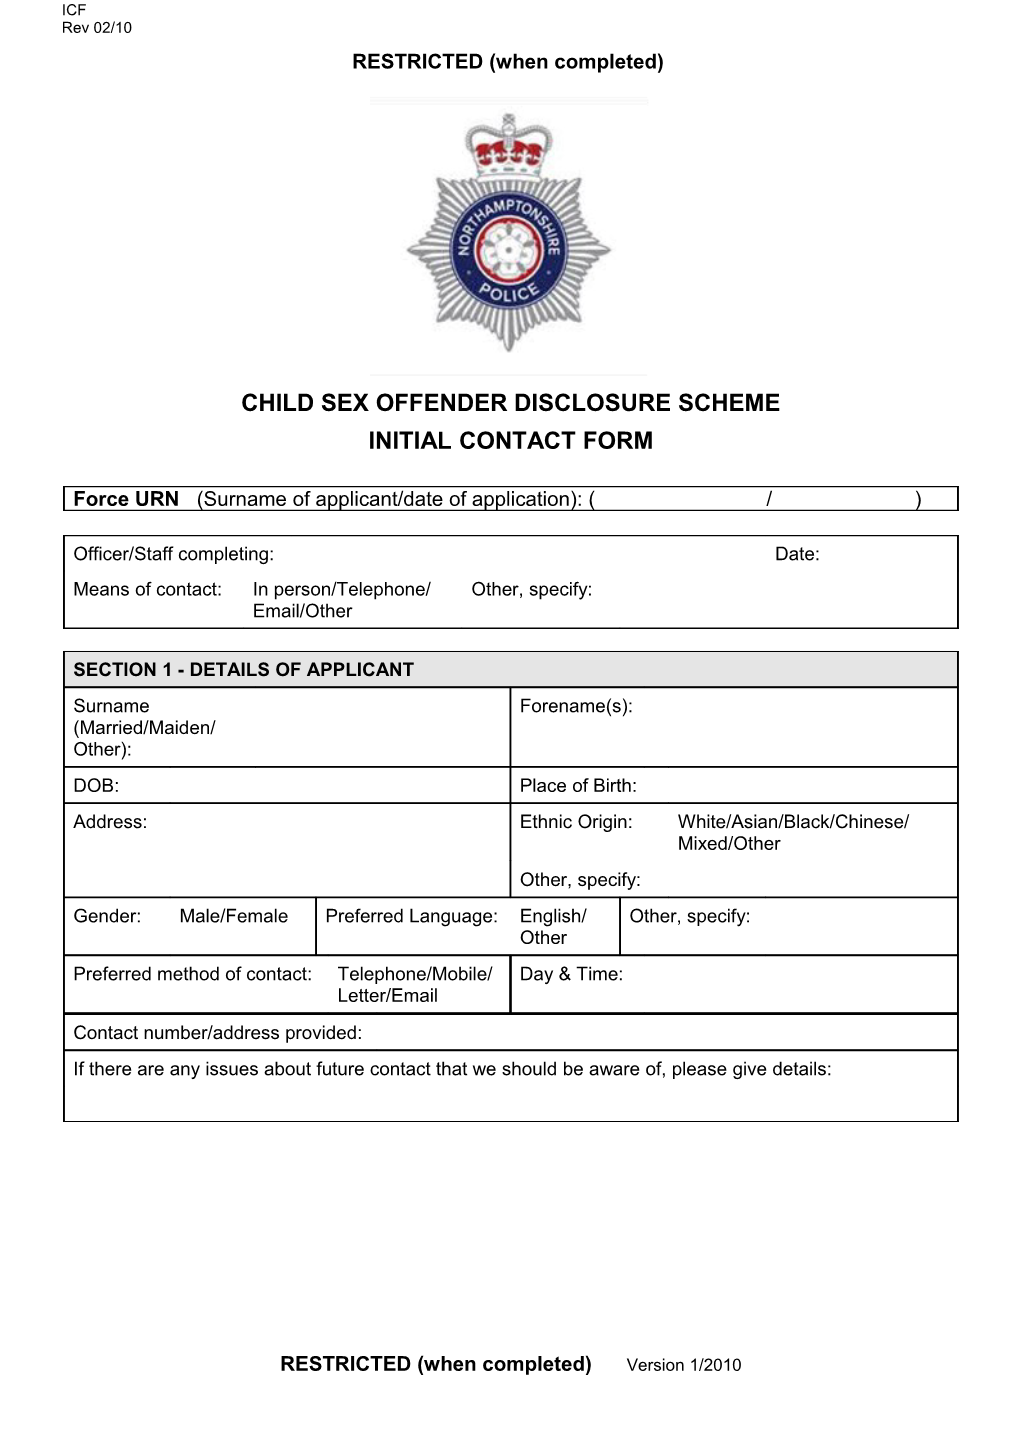 Child Sex Offender Disclosure Scheme